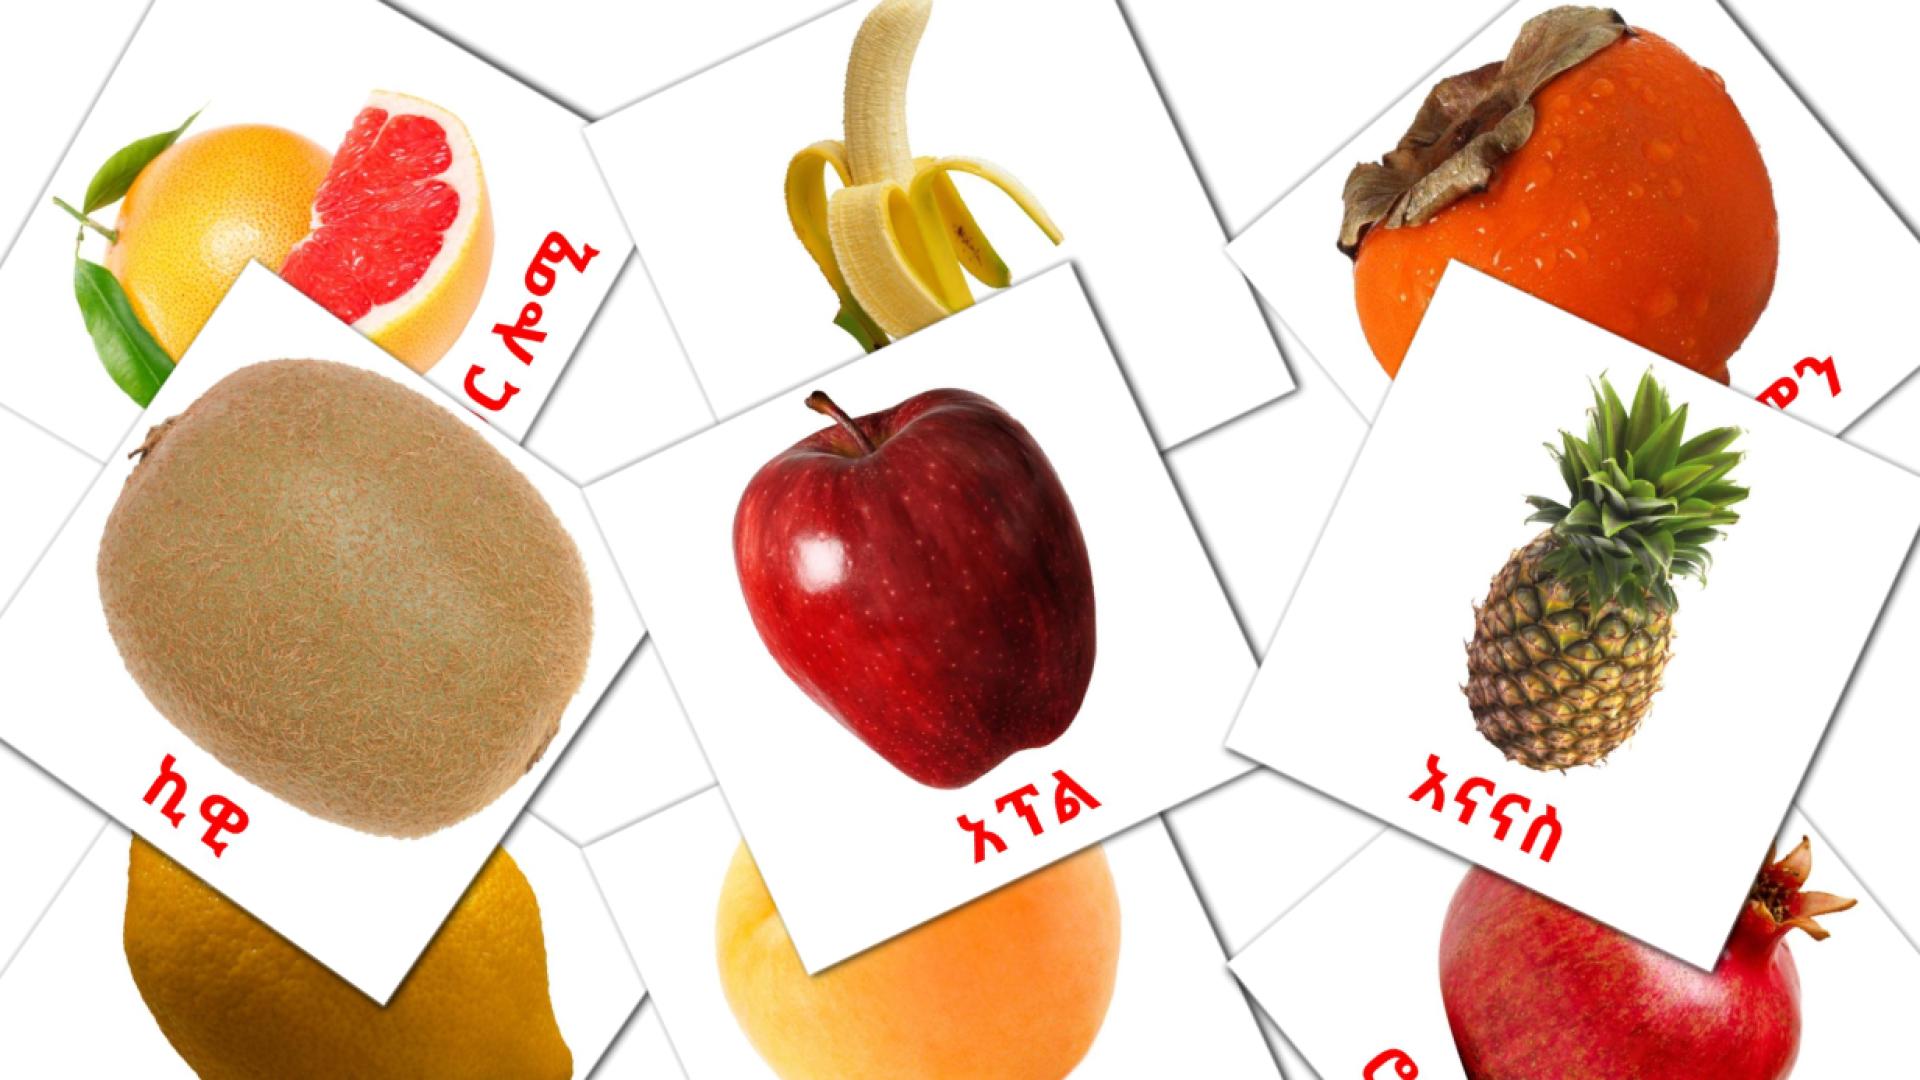 Obst - Amharische Vokabelkarten